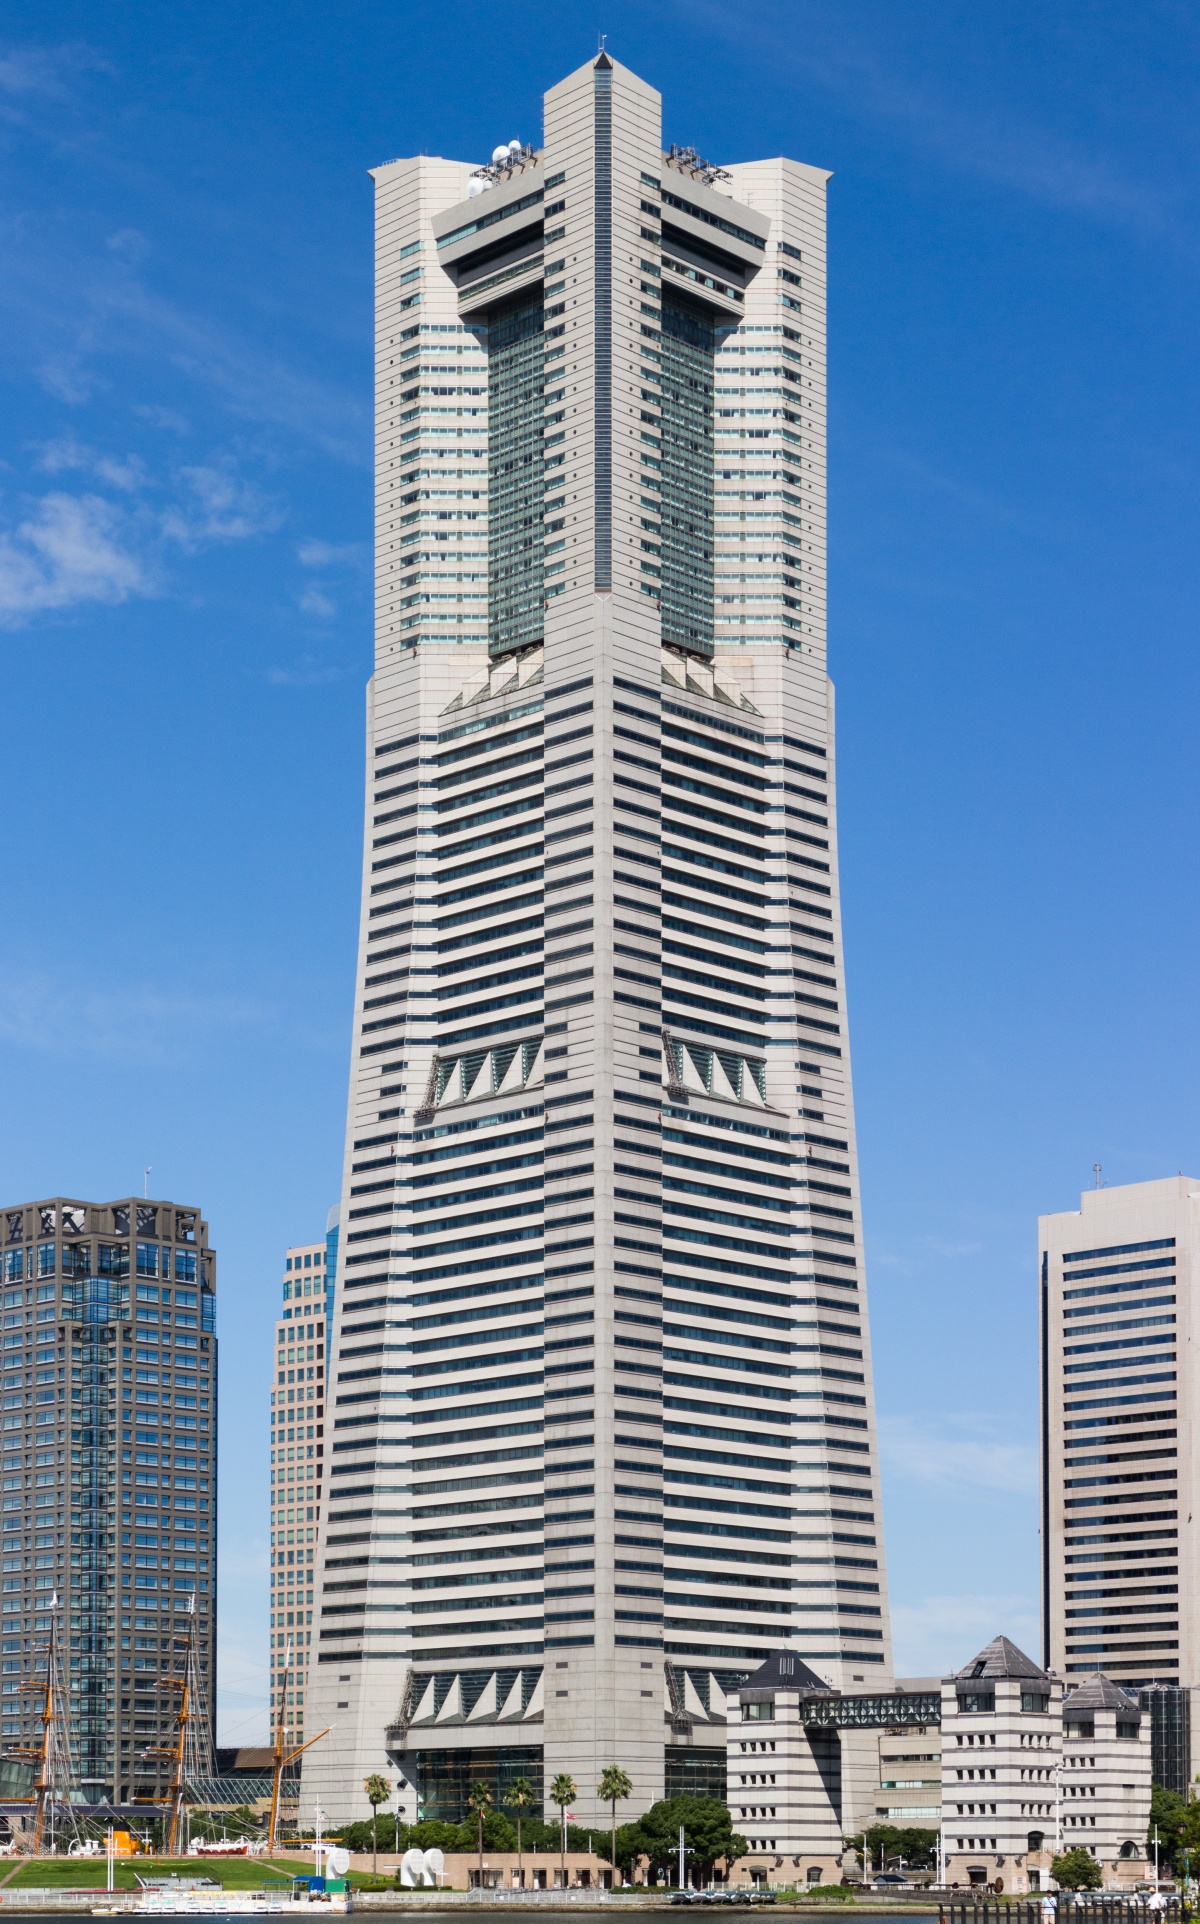 6. ตึก Landmark Tower